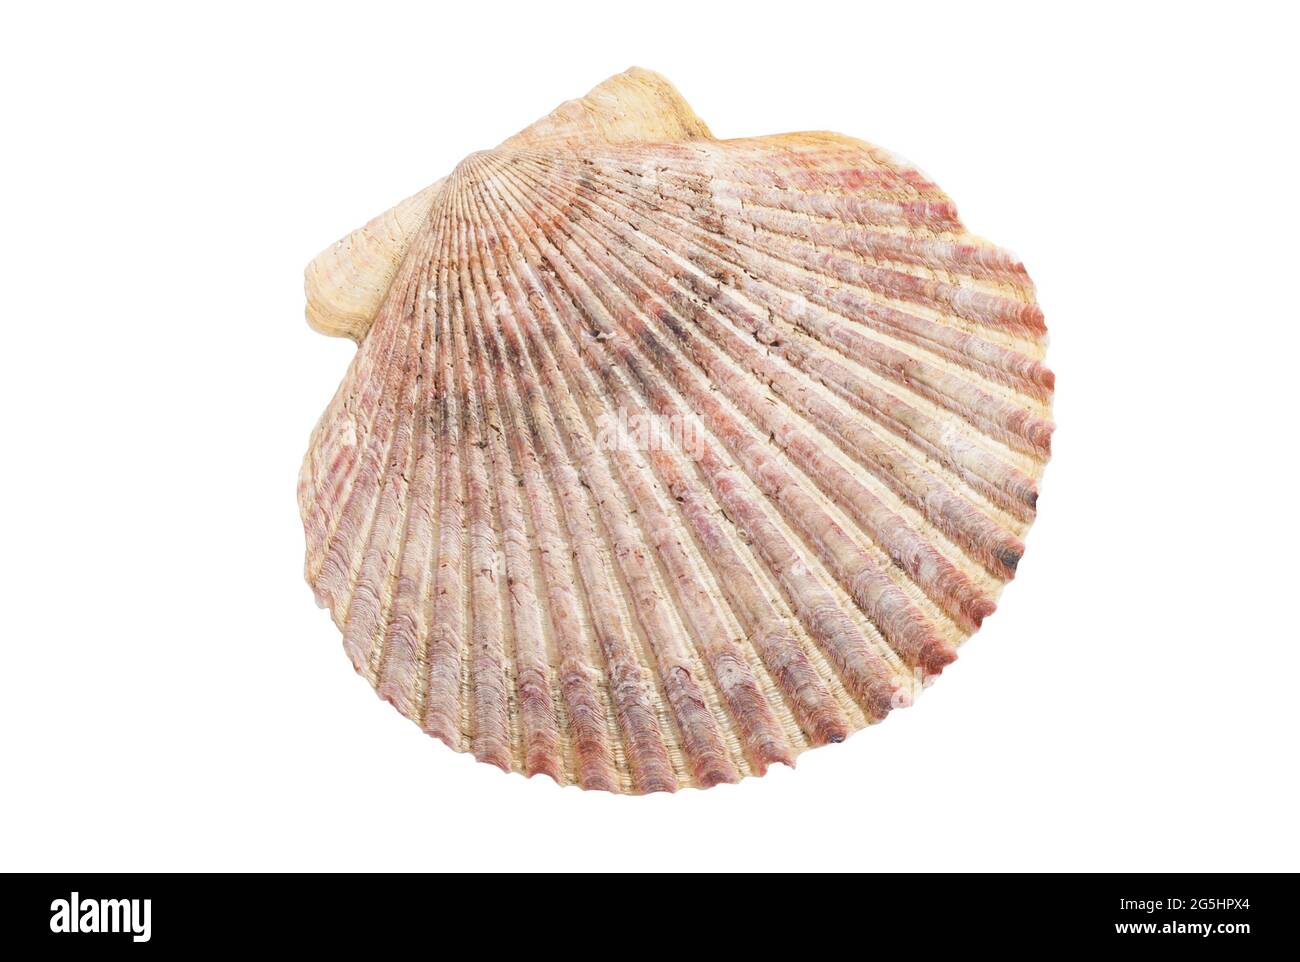 Large shell isolated on white background Stock Photo